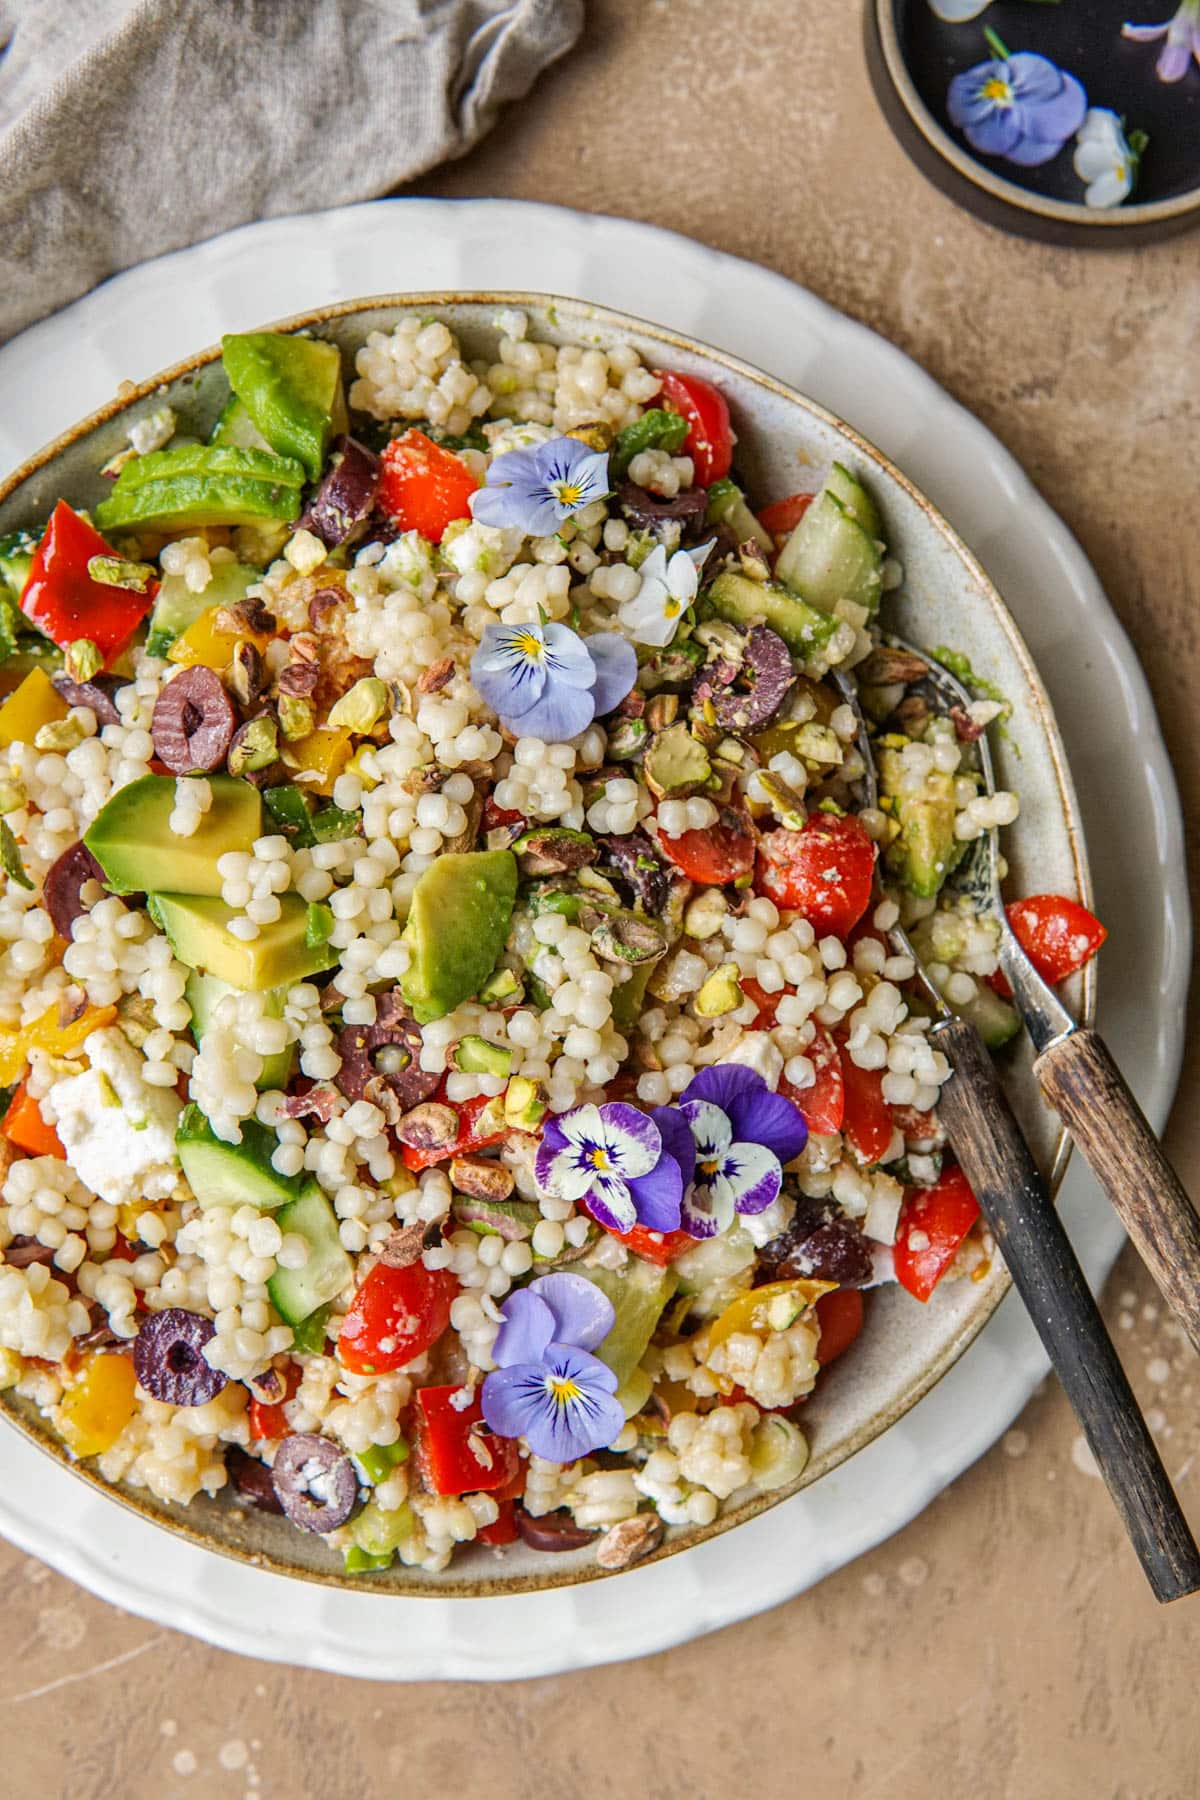 Recept voor vegan salade met parelcouscous